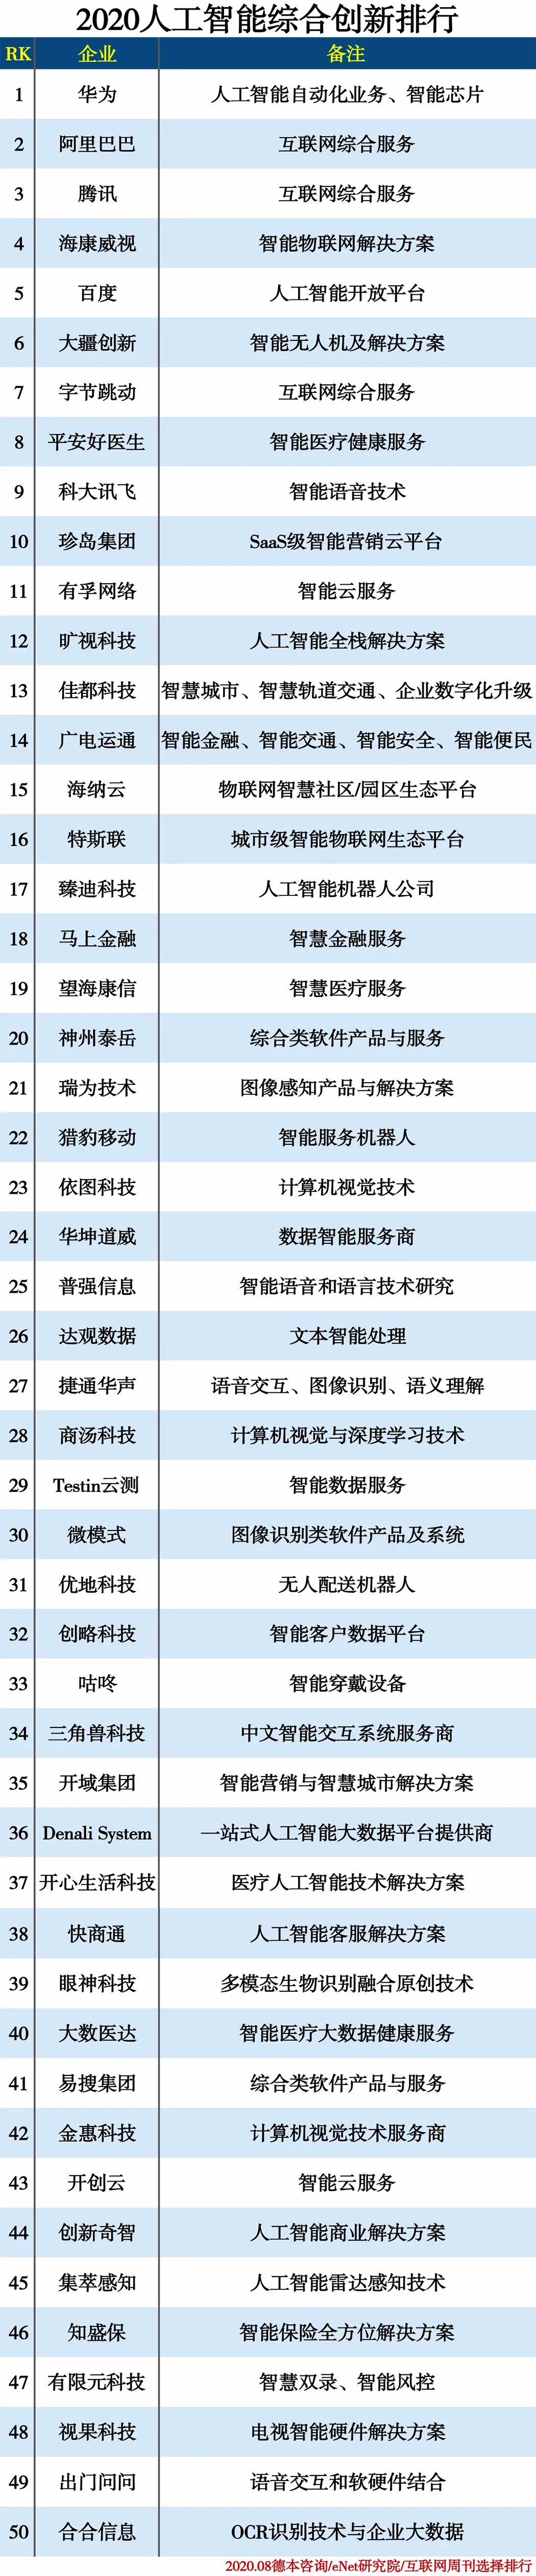 2020ai公司排名_杭州效果科技荣登“2020人工智能SaaS企业排行榜”,CRM类位